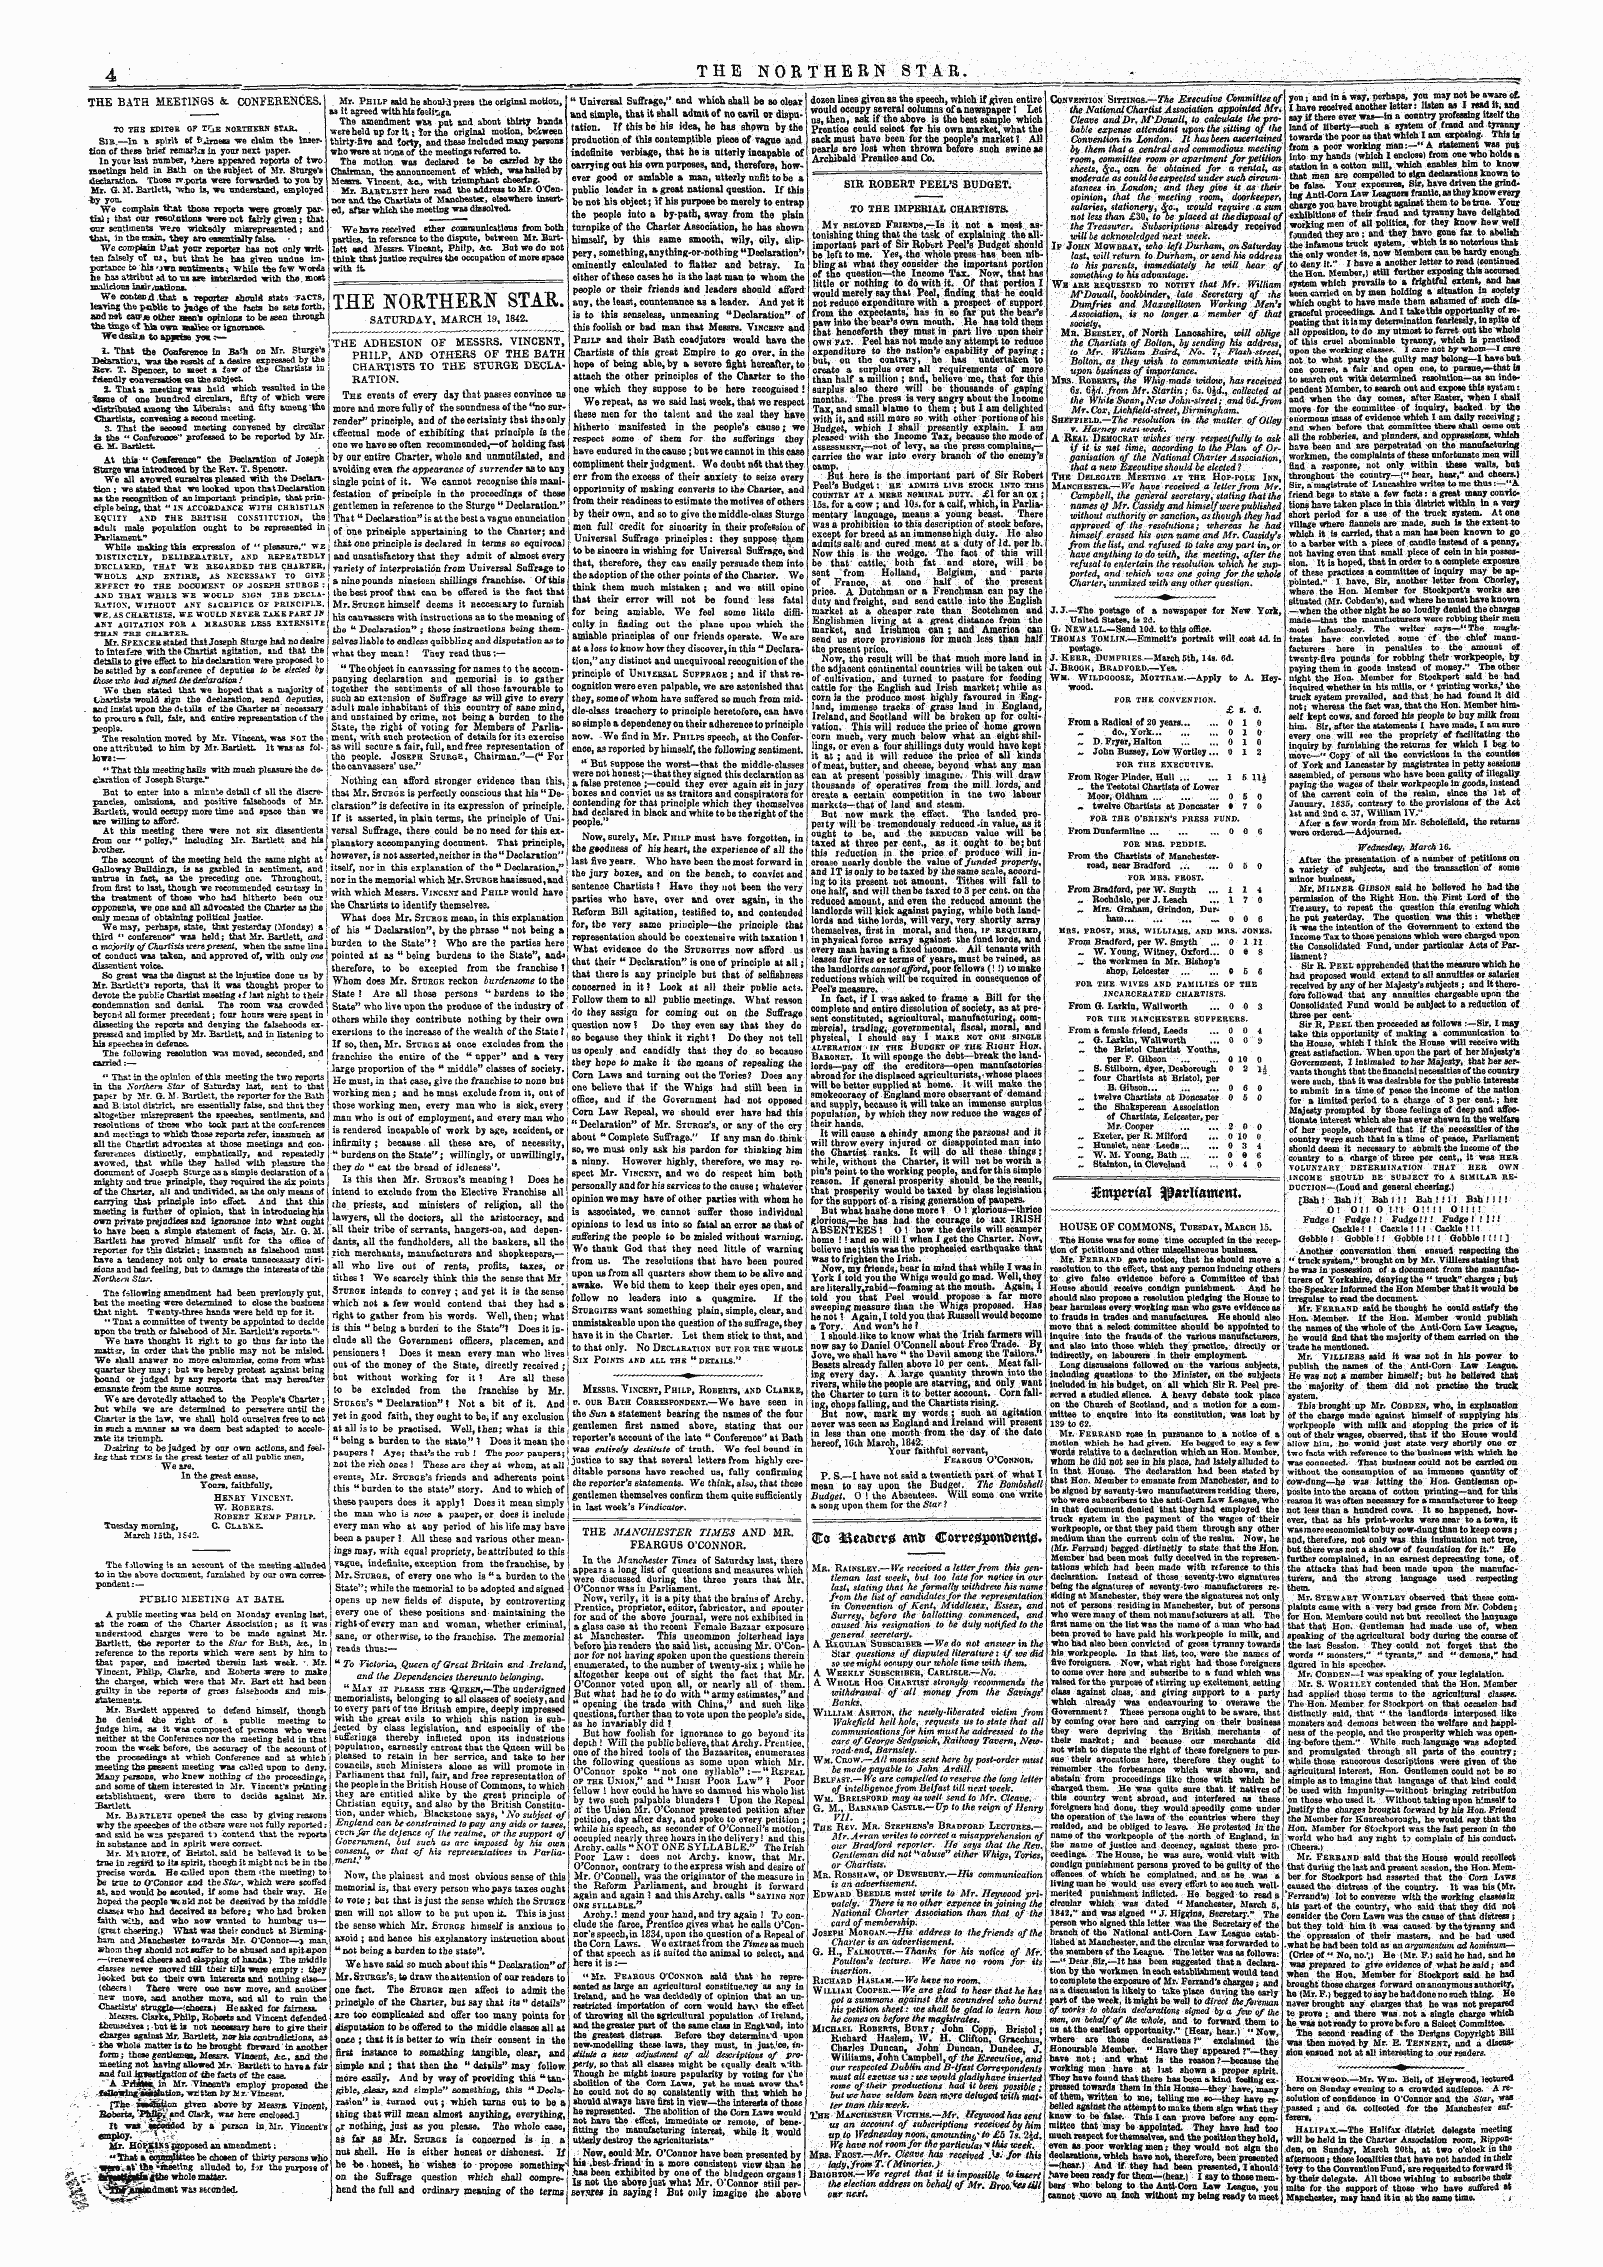 Northern Star (1837-1852): jS F Y, 2nd edition - $Nqtt*Tal ^Atltanwntv